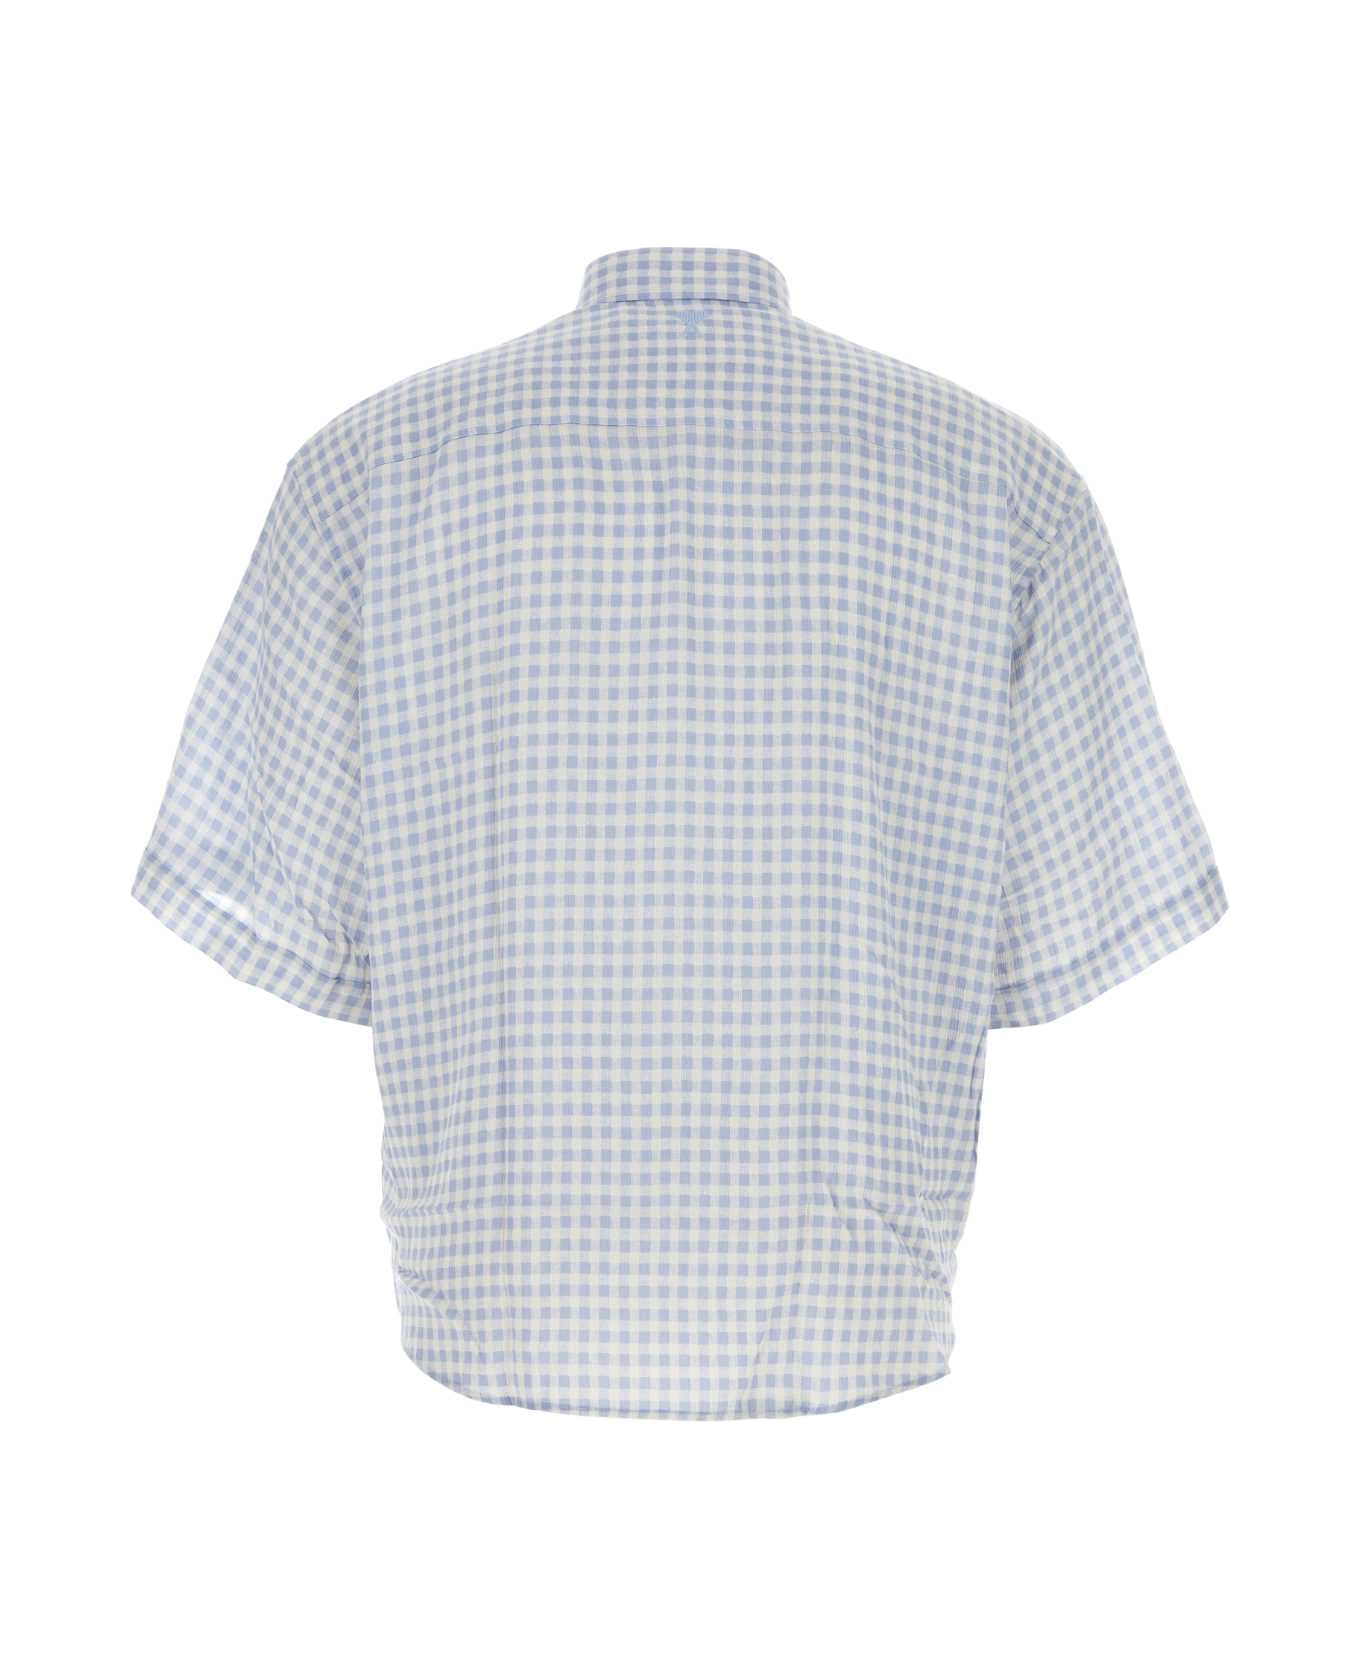 Ami Alexandre Mattiussi Embroidered Viscose Shirt - CHALKCASHMEREBLUE シャツ